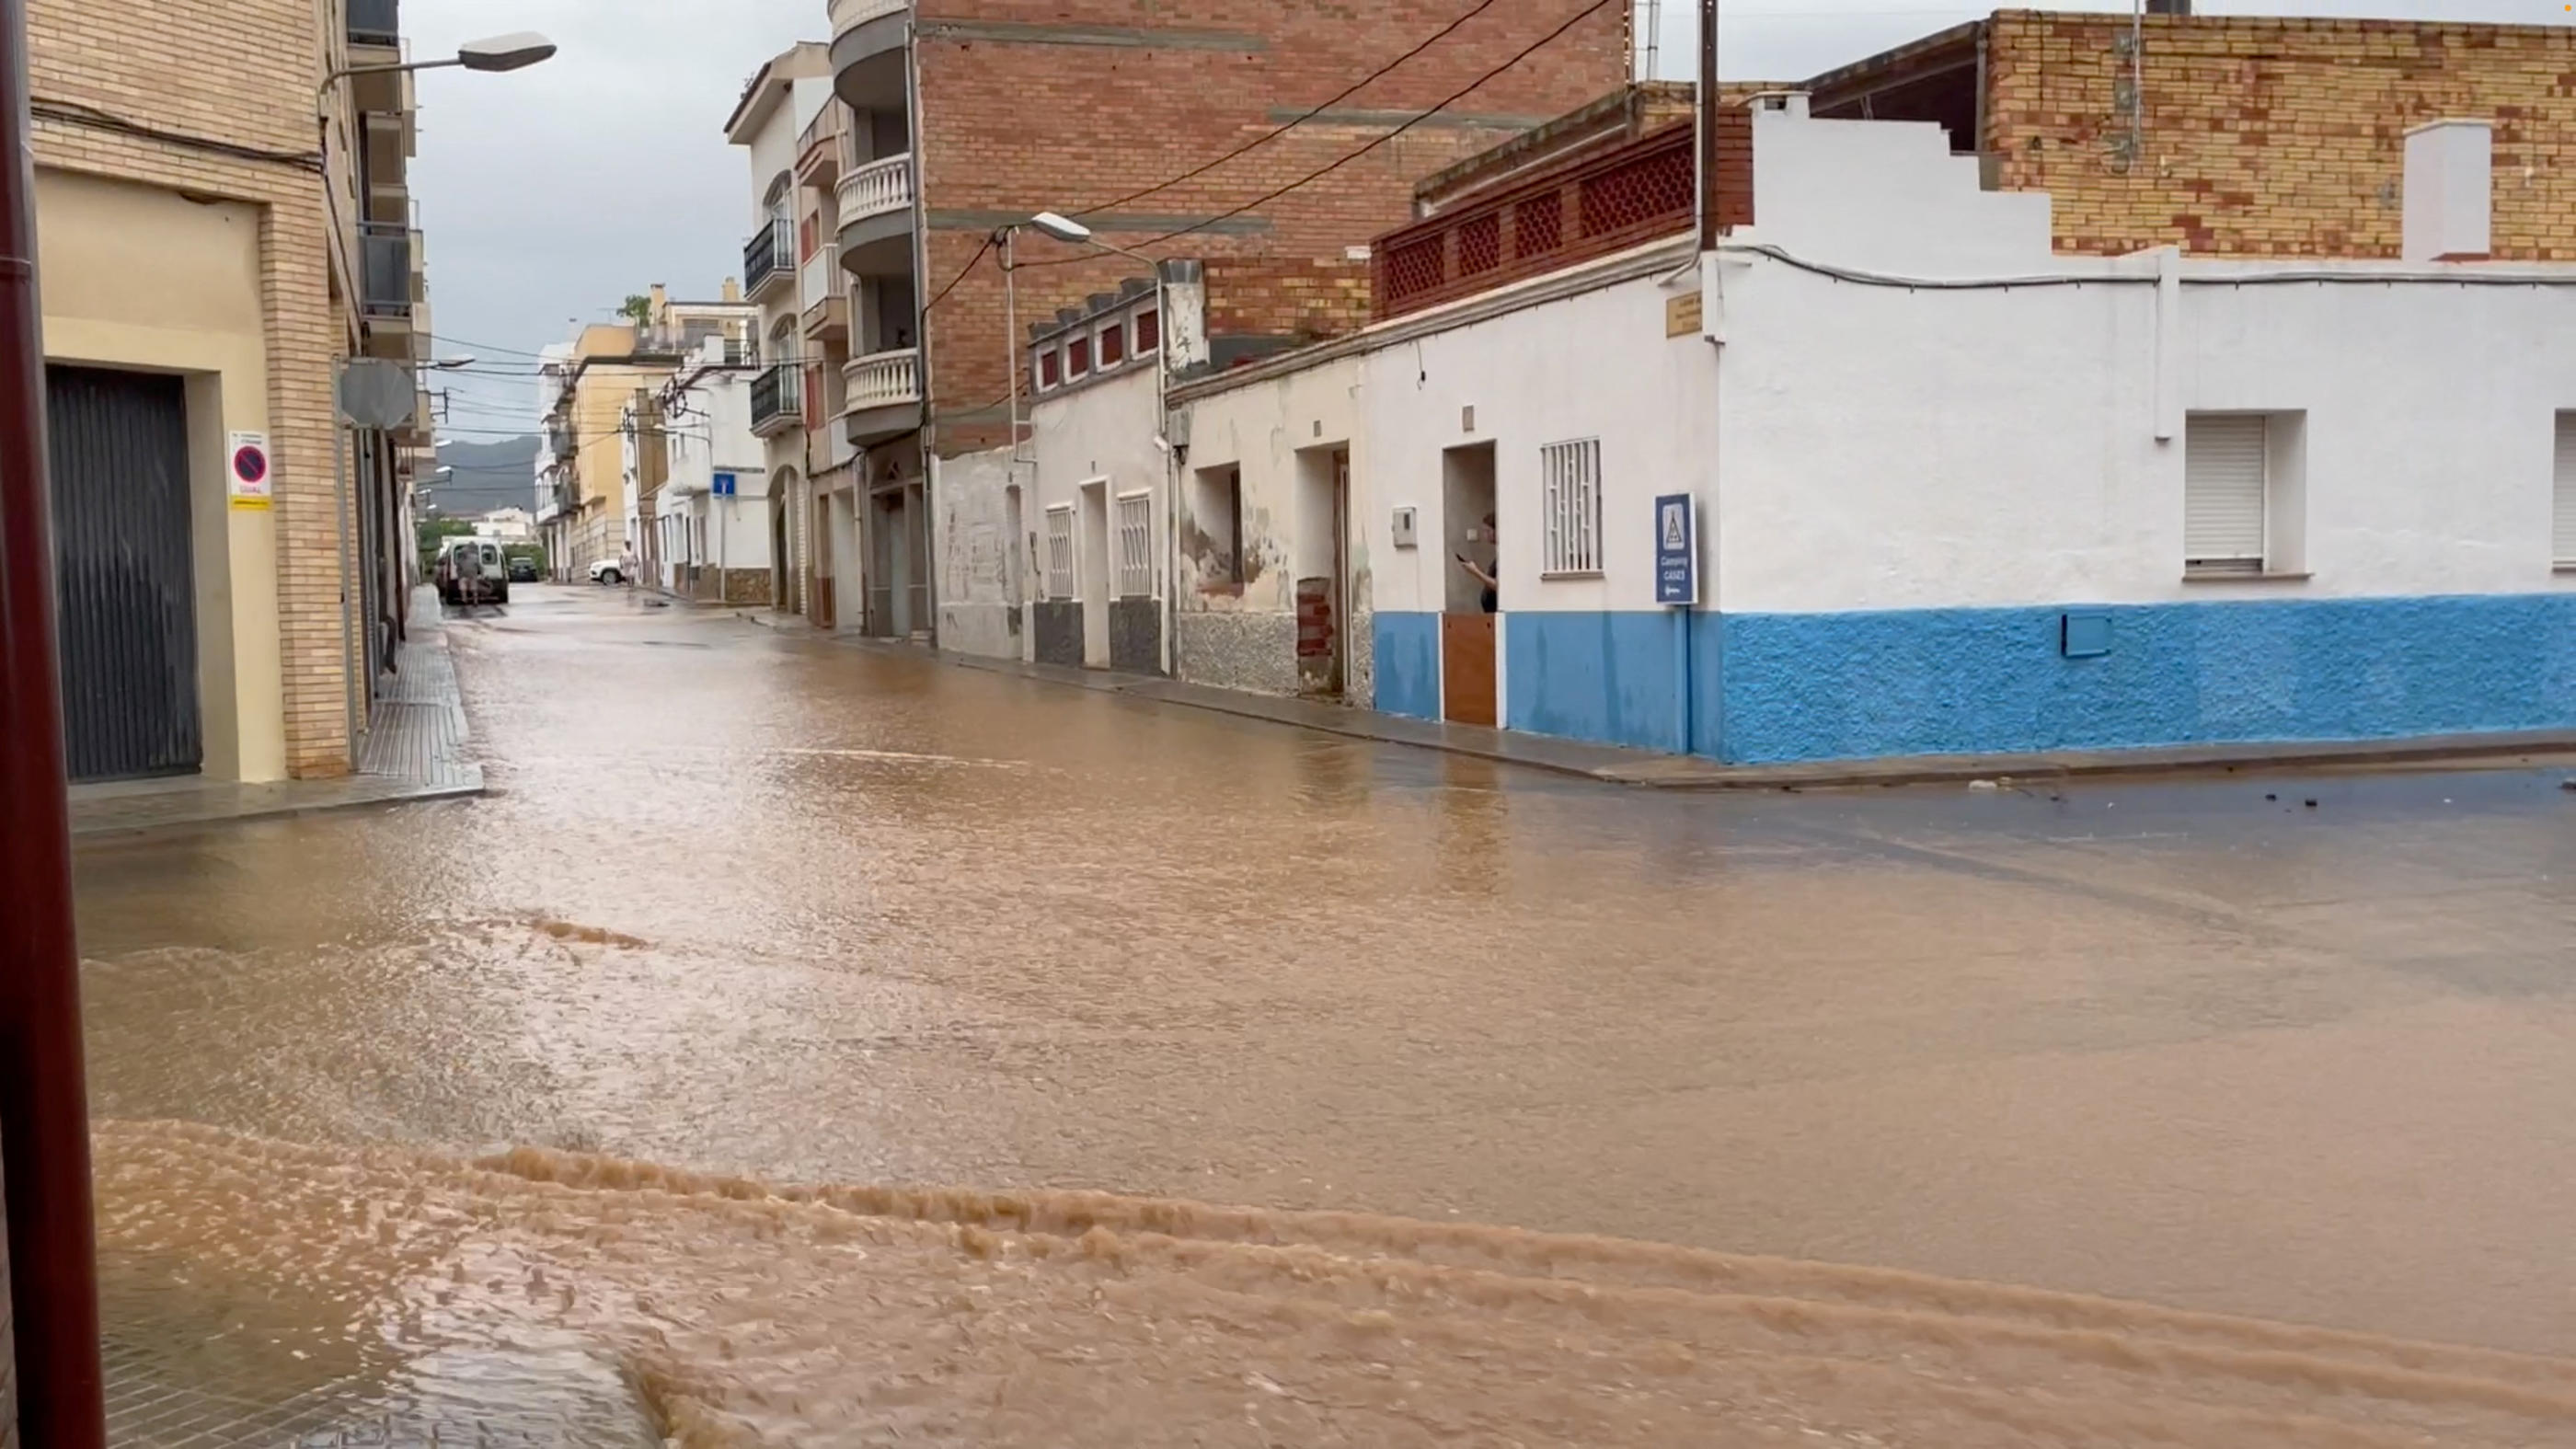 La ville d'Alcanar, sur le pourtour méditerranéen, est touchée par des inondations en raison des pluies torrentielles. Reuters / @anastasia.flidlider_watercolor via Instagram